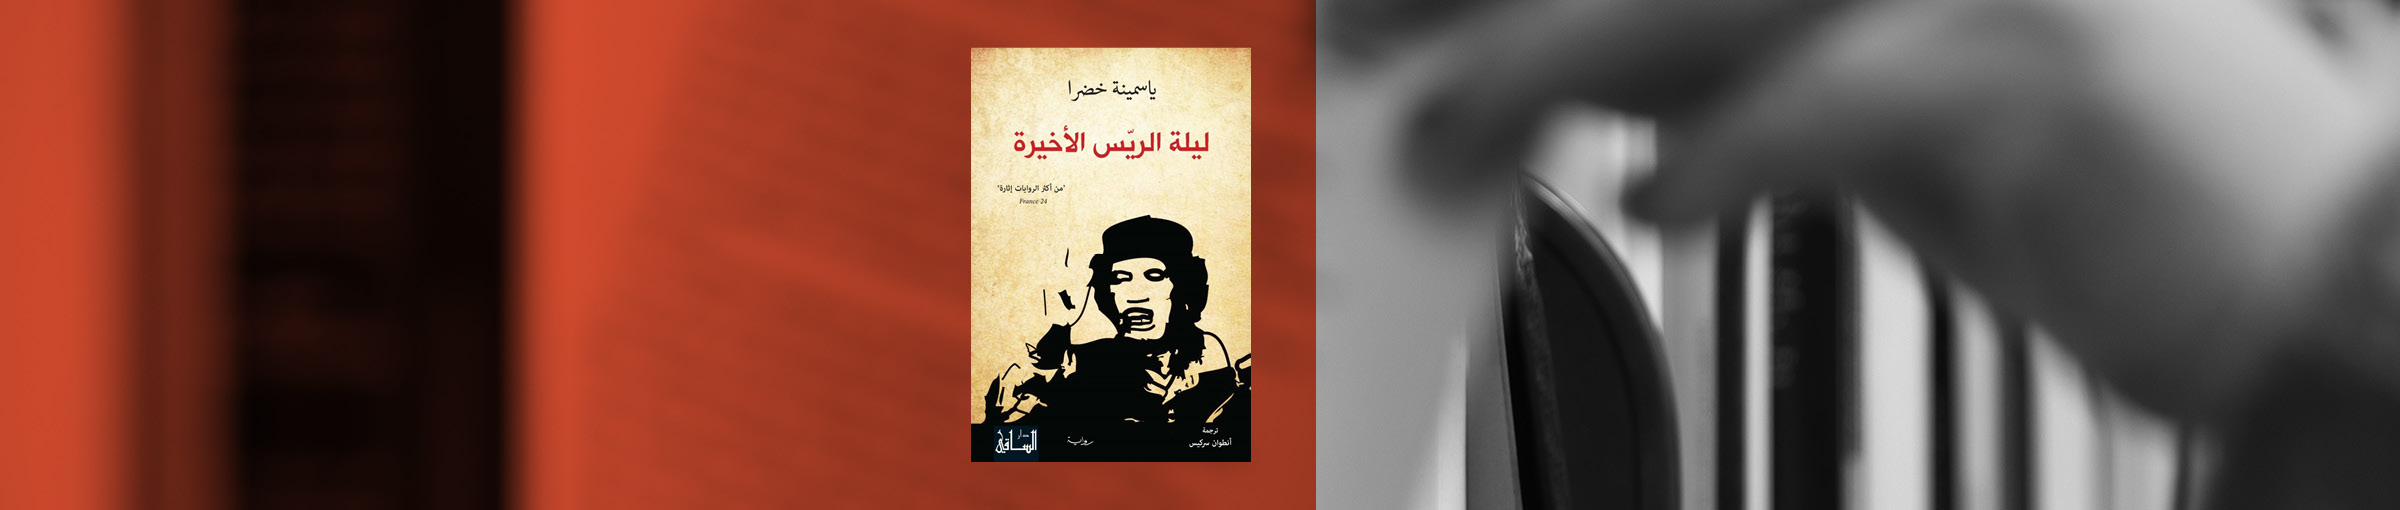 "ليلة الريّس الأخيرة"، تفاصيل الليلة الأخيرة في حياة القذافي